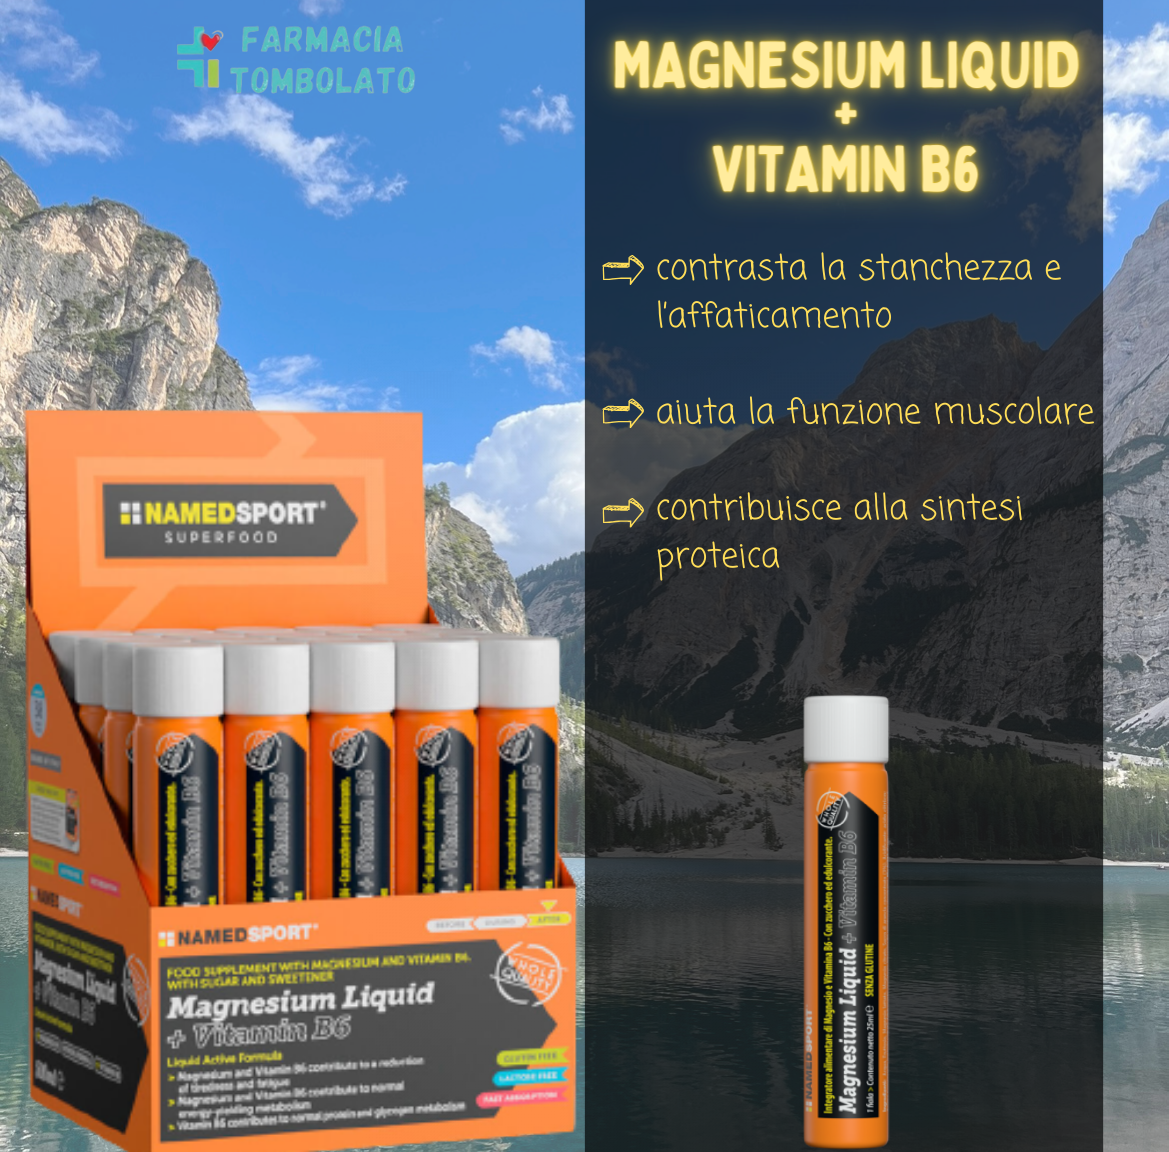 magnesium-liquid-vitamin-b6-1